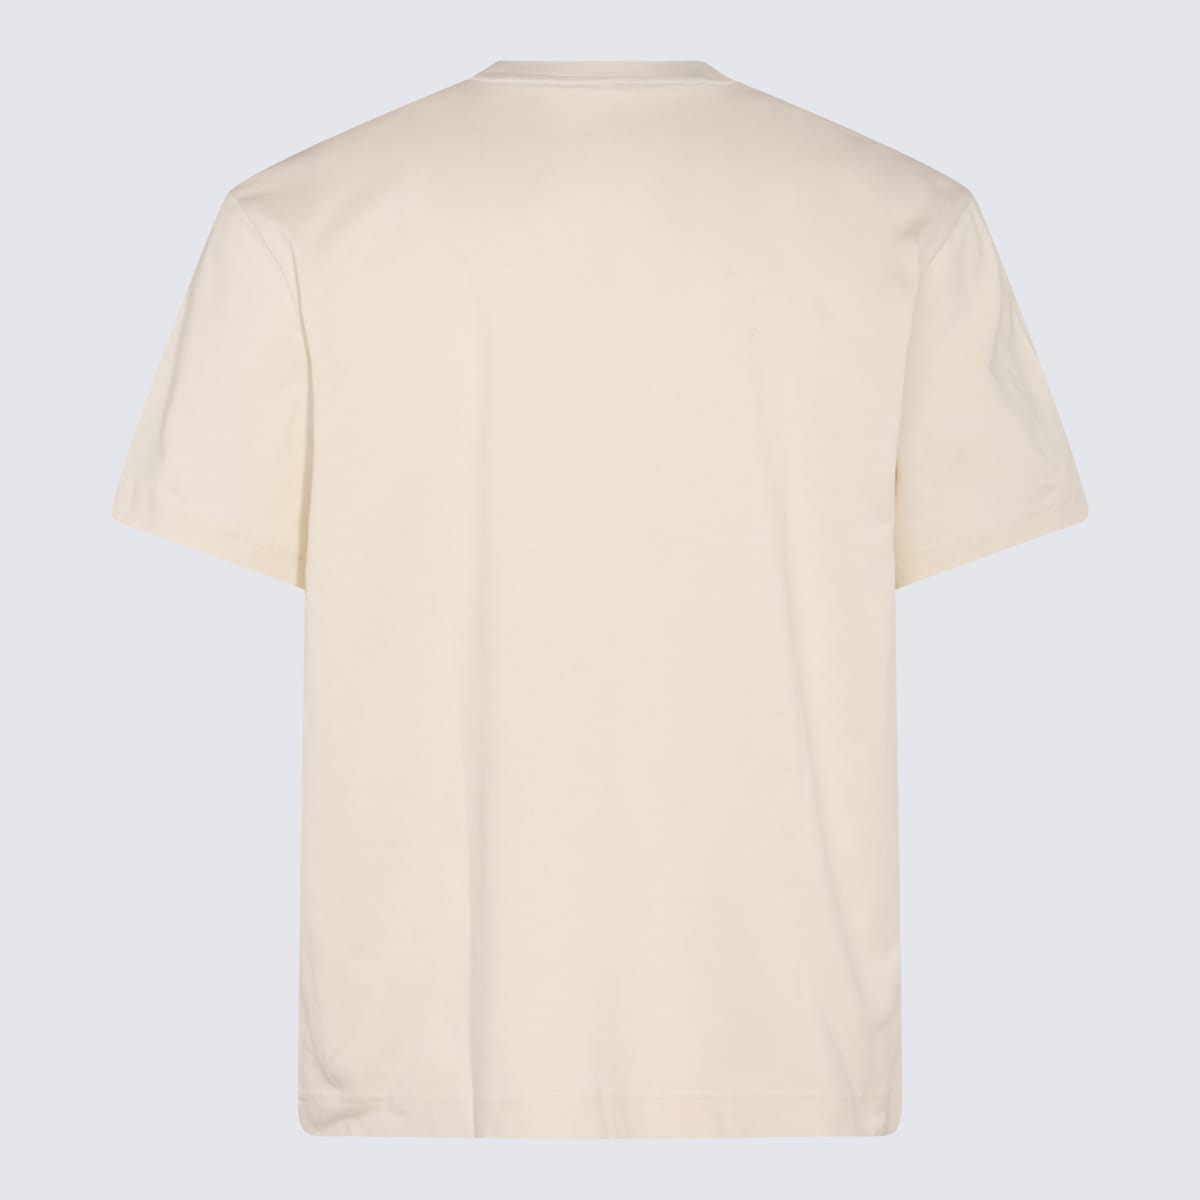 Light Beige Cotton T-shirt